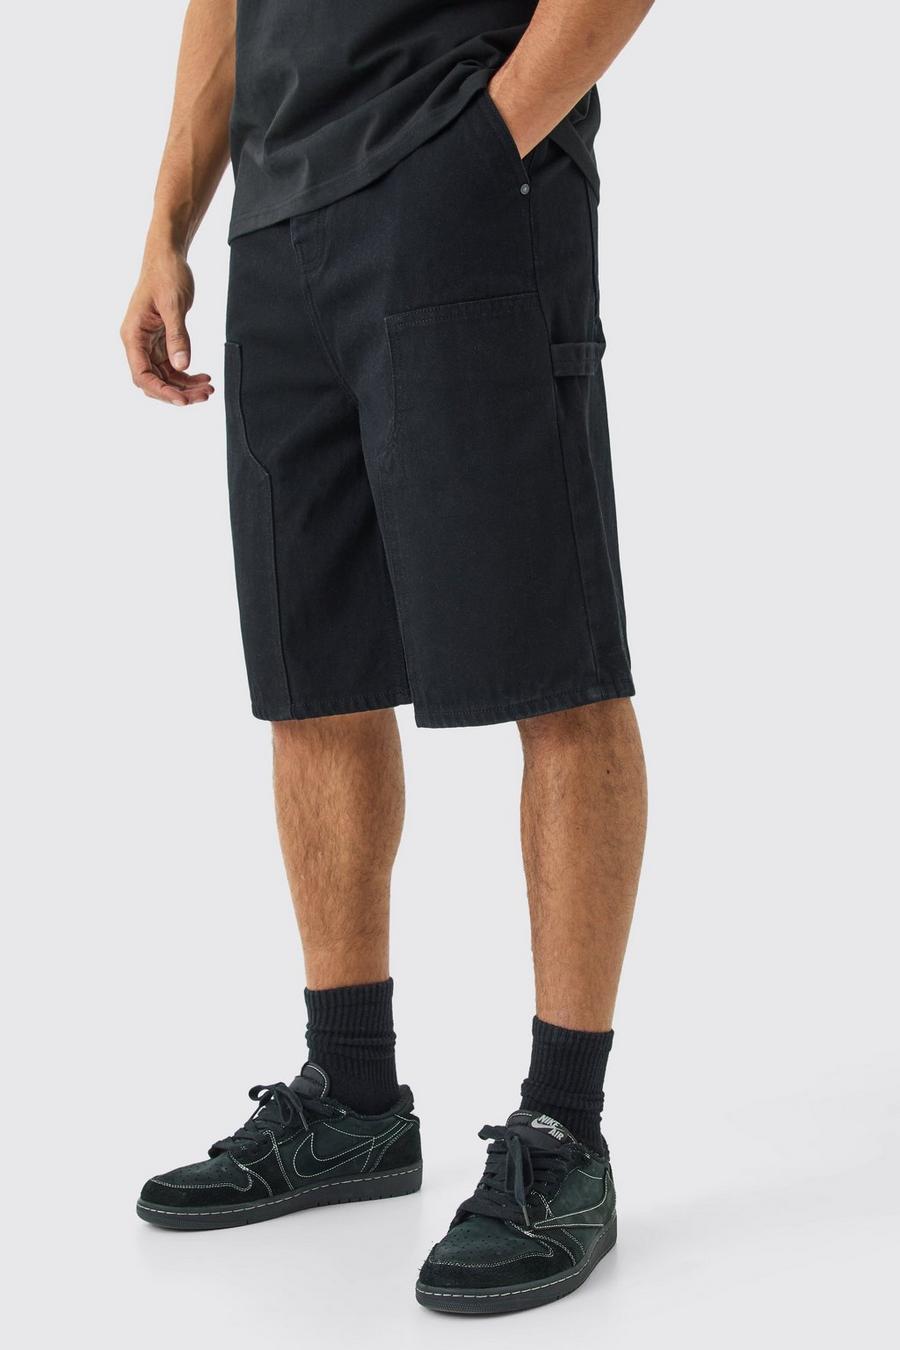 Pantaloni tuta in denim neri con dettagli stile Carpenter, True black